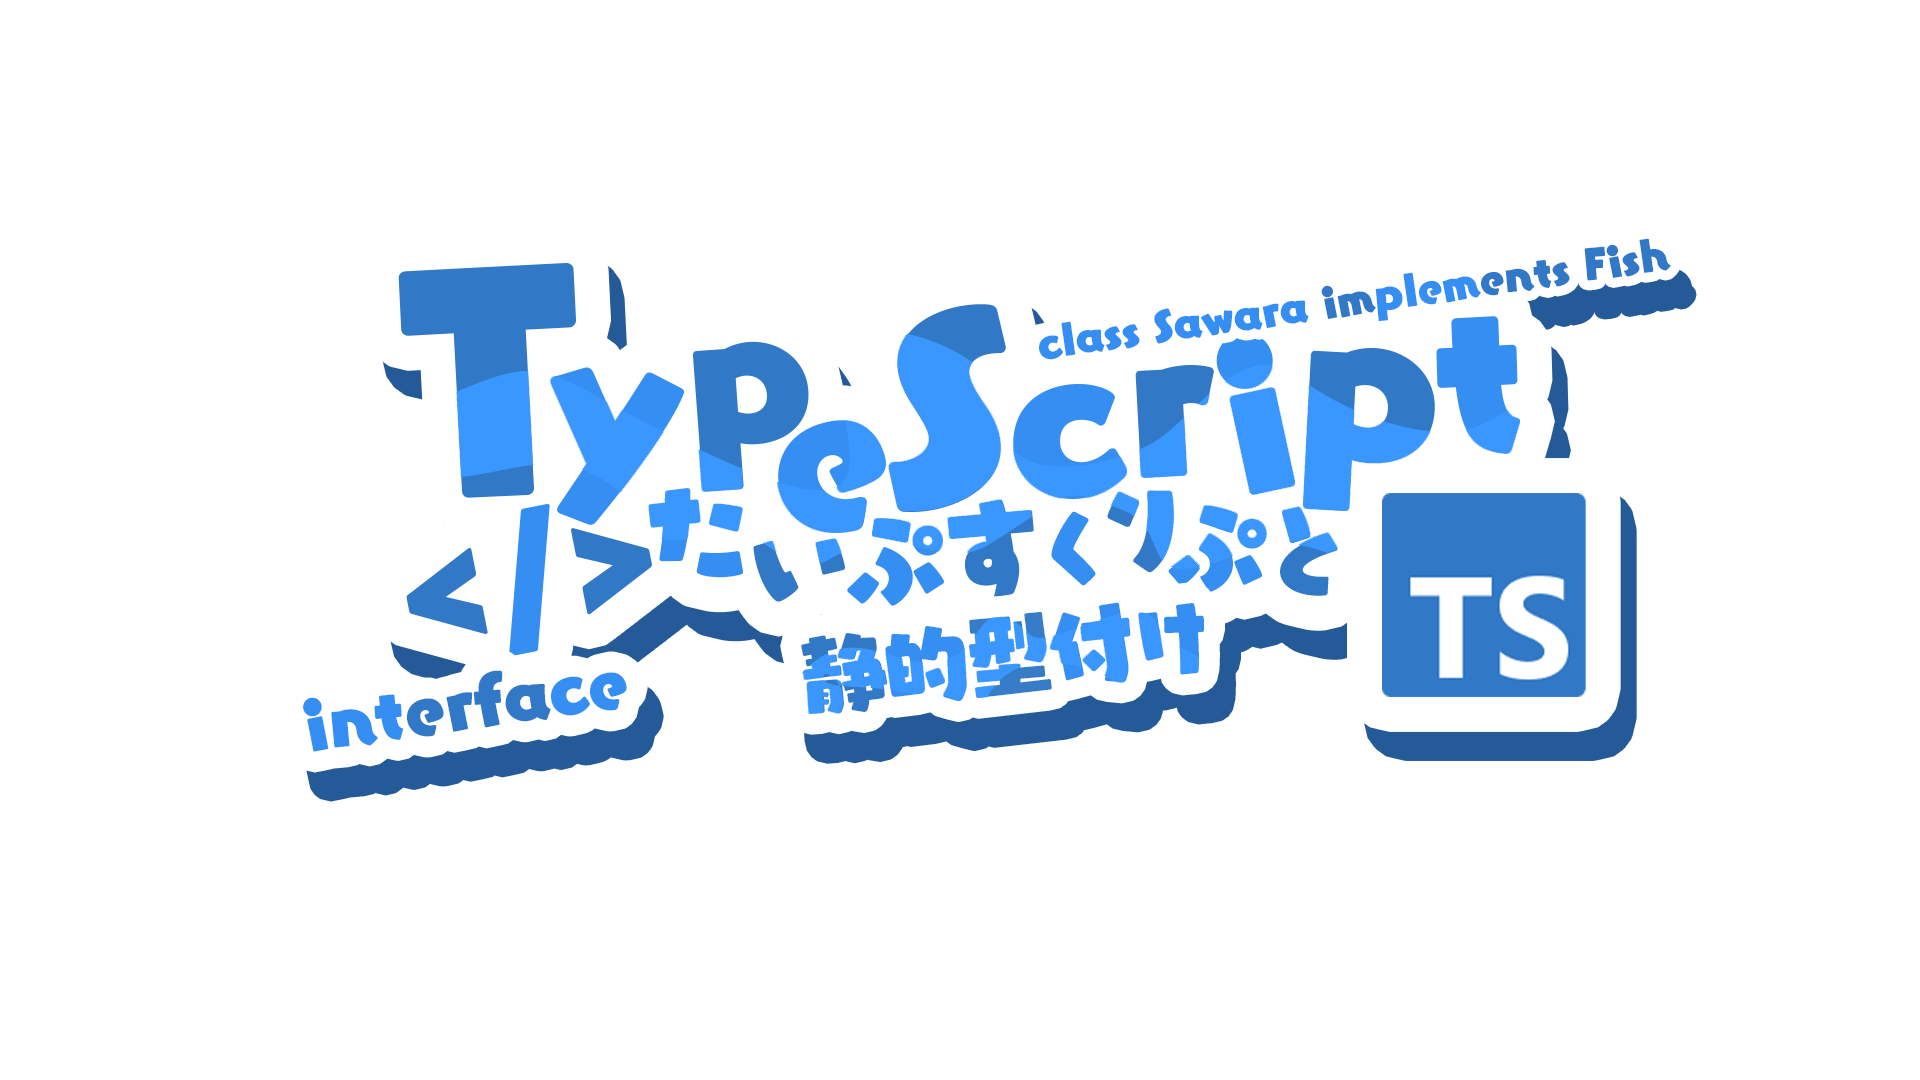 TypeScript.png